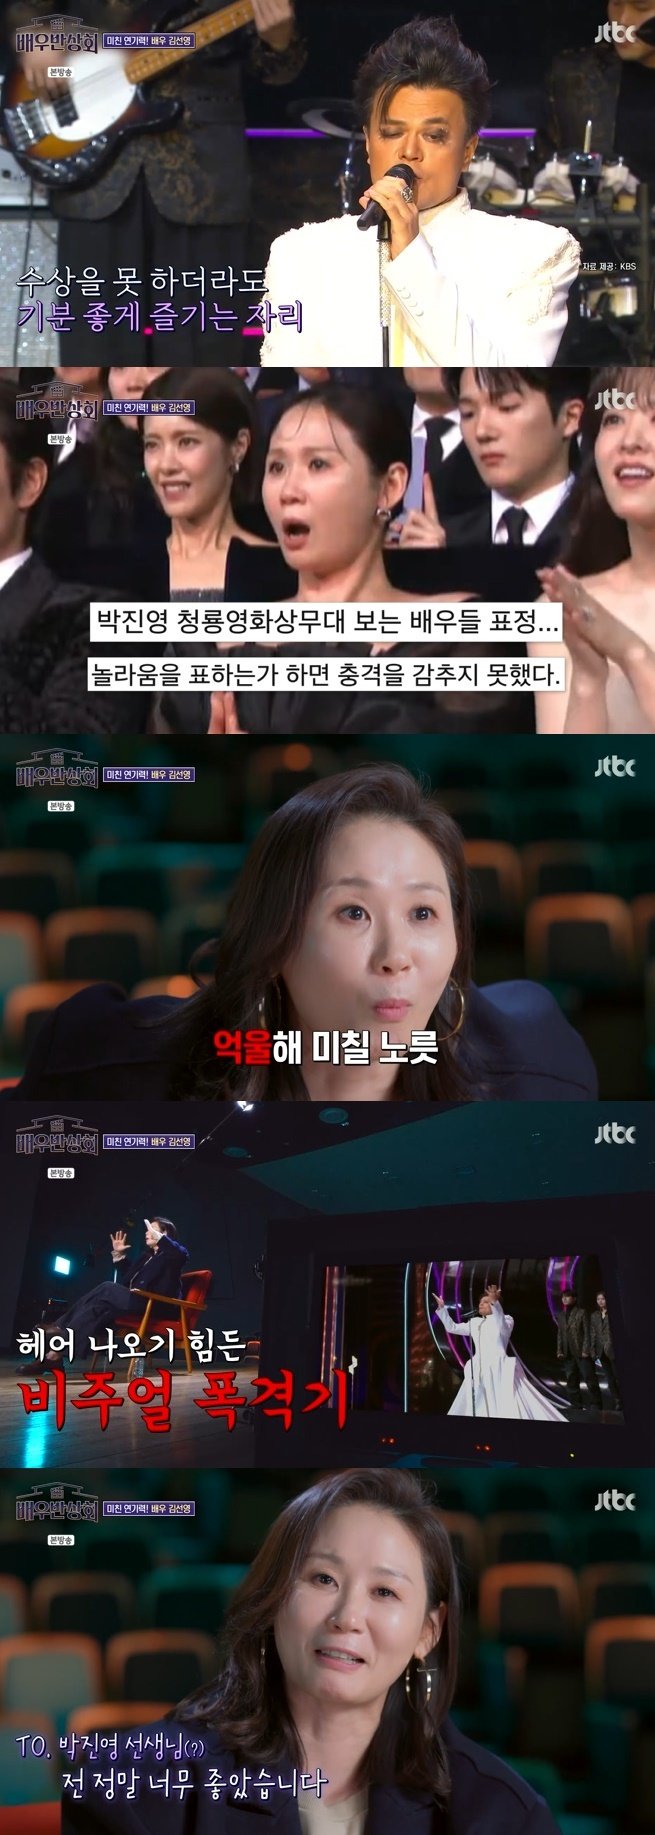 김선영, 박진영 축하무대 리액션 해명…너무 억울해 이유는 [RE:TV]